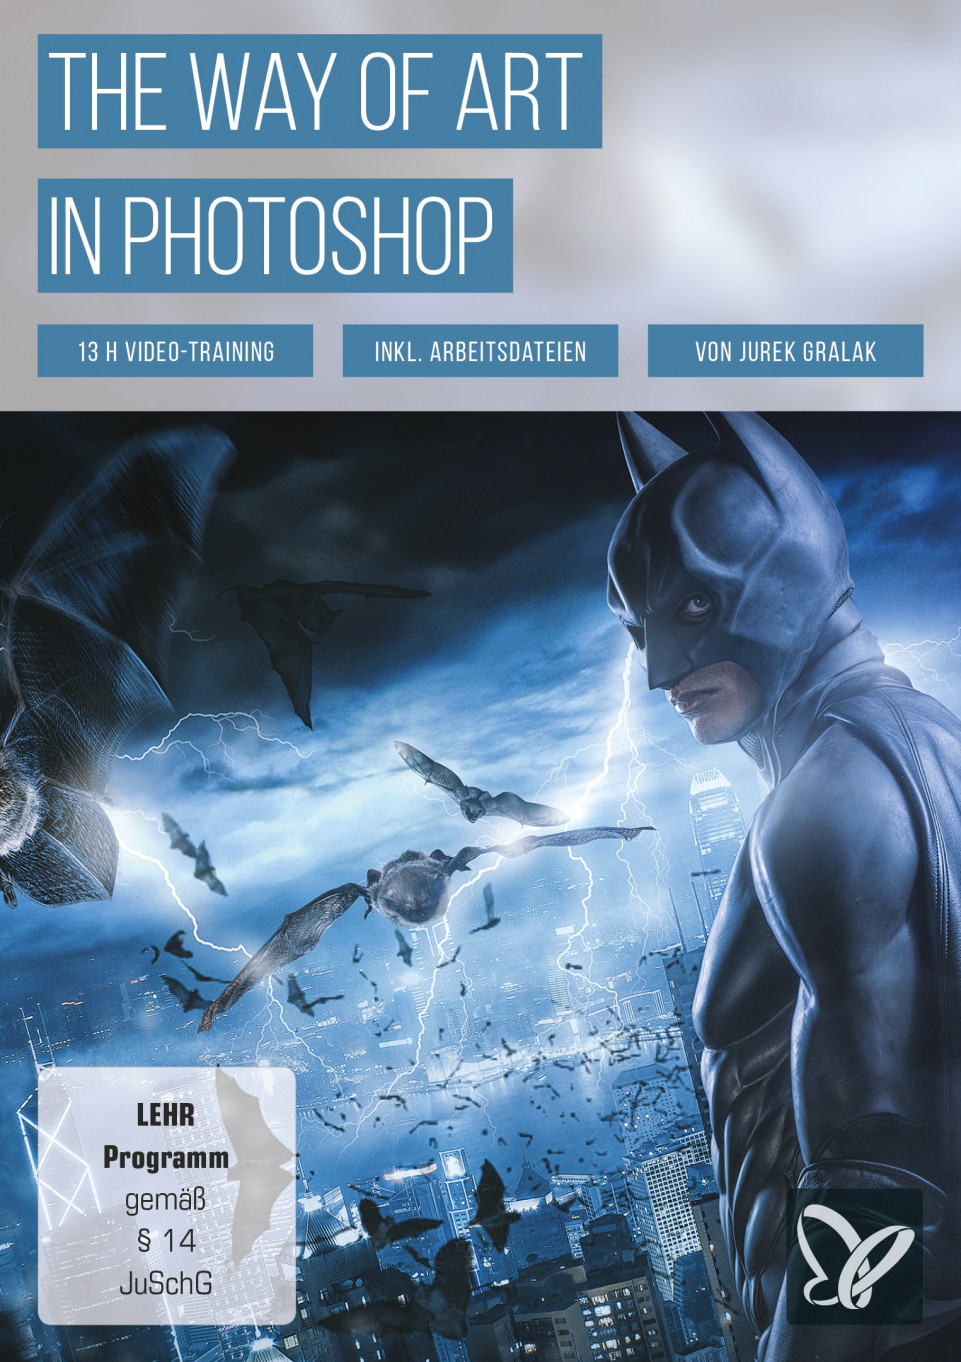 Bildcomposing und Perspektive in Photoshop: Artwork im Batman-Stil